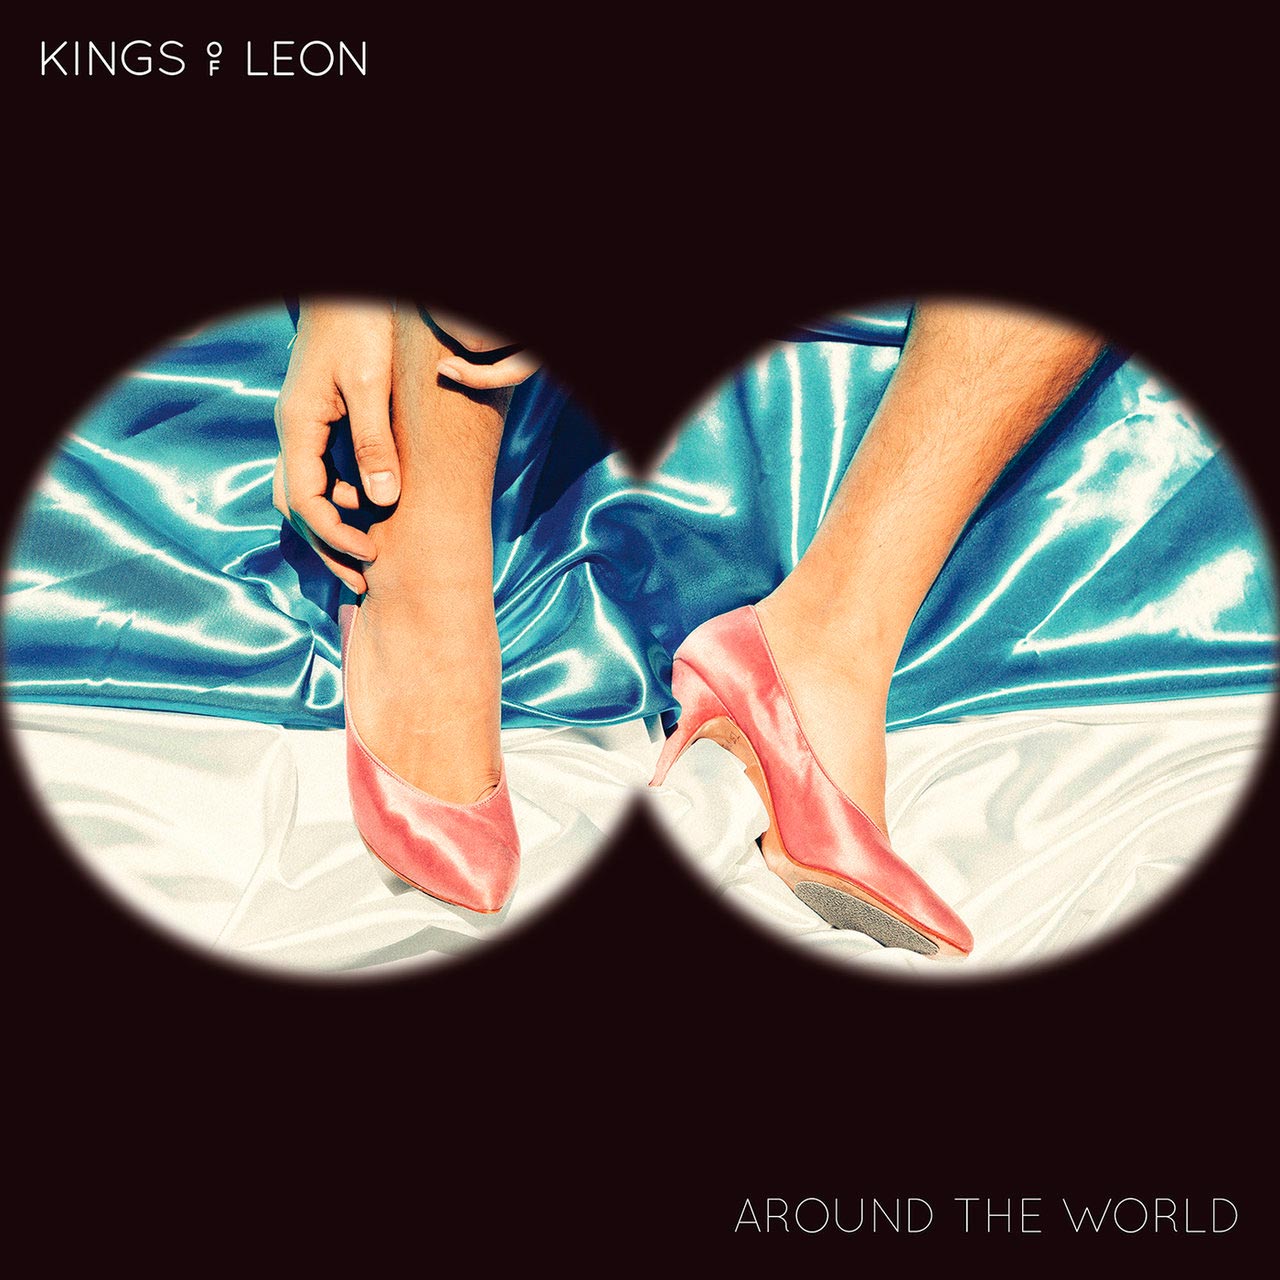 Kings of Leon: Around the world, la portada de la canción